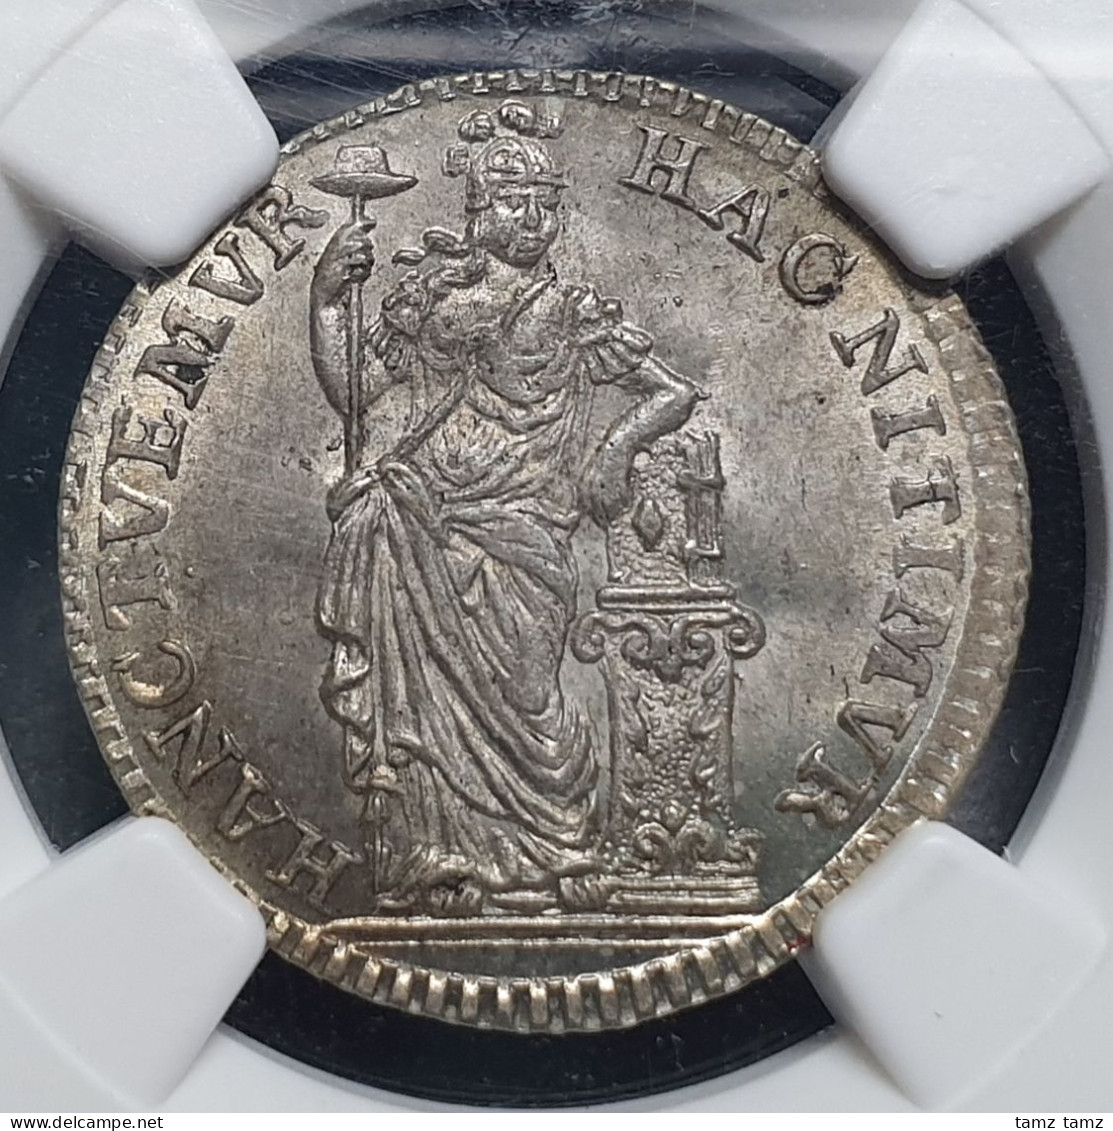 Netherlands Holland 1/4 Gulden Goddess 1759 NGC MS 65 - Provinciale Munten